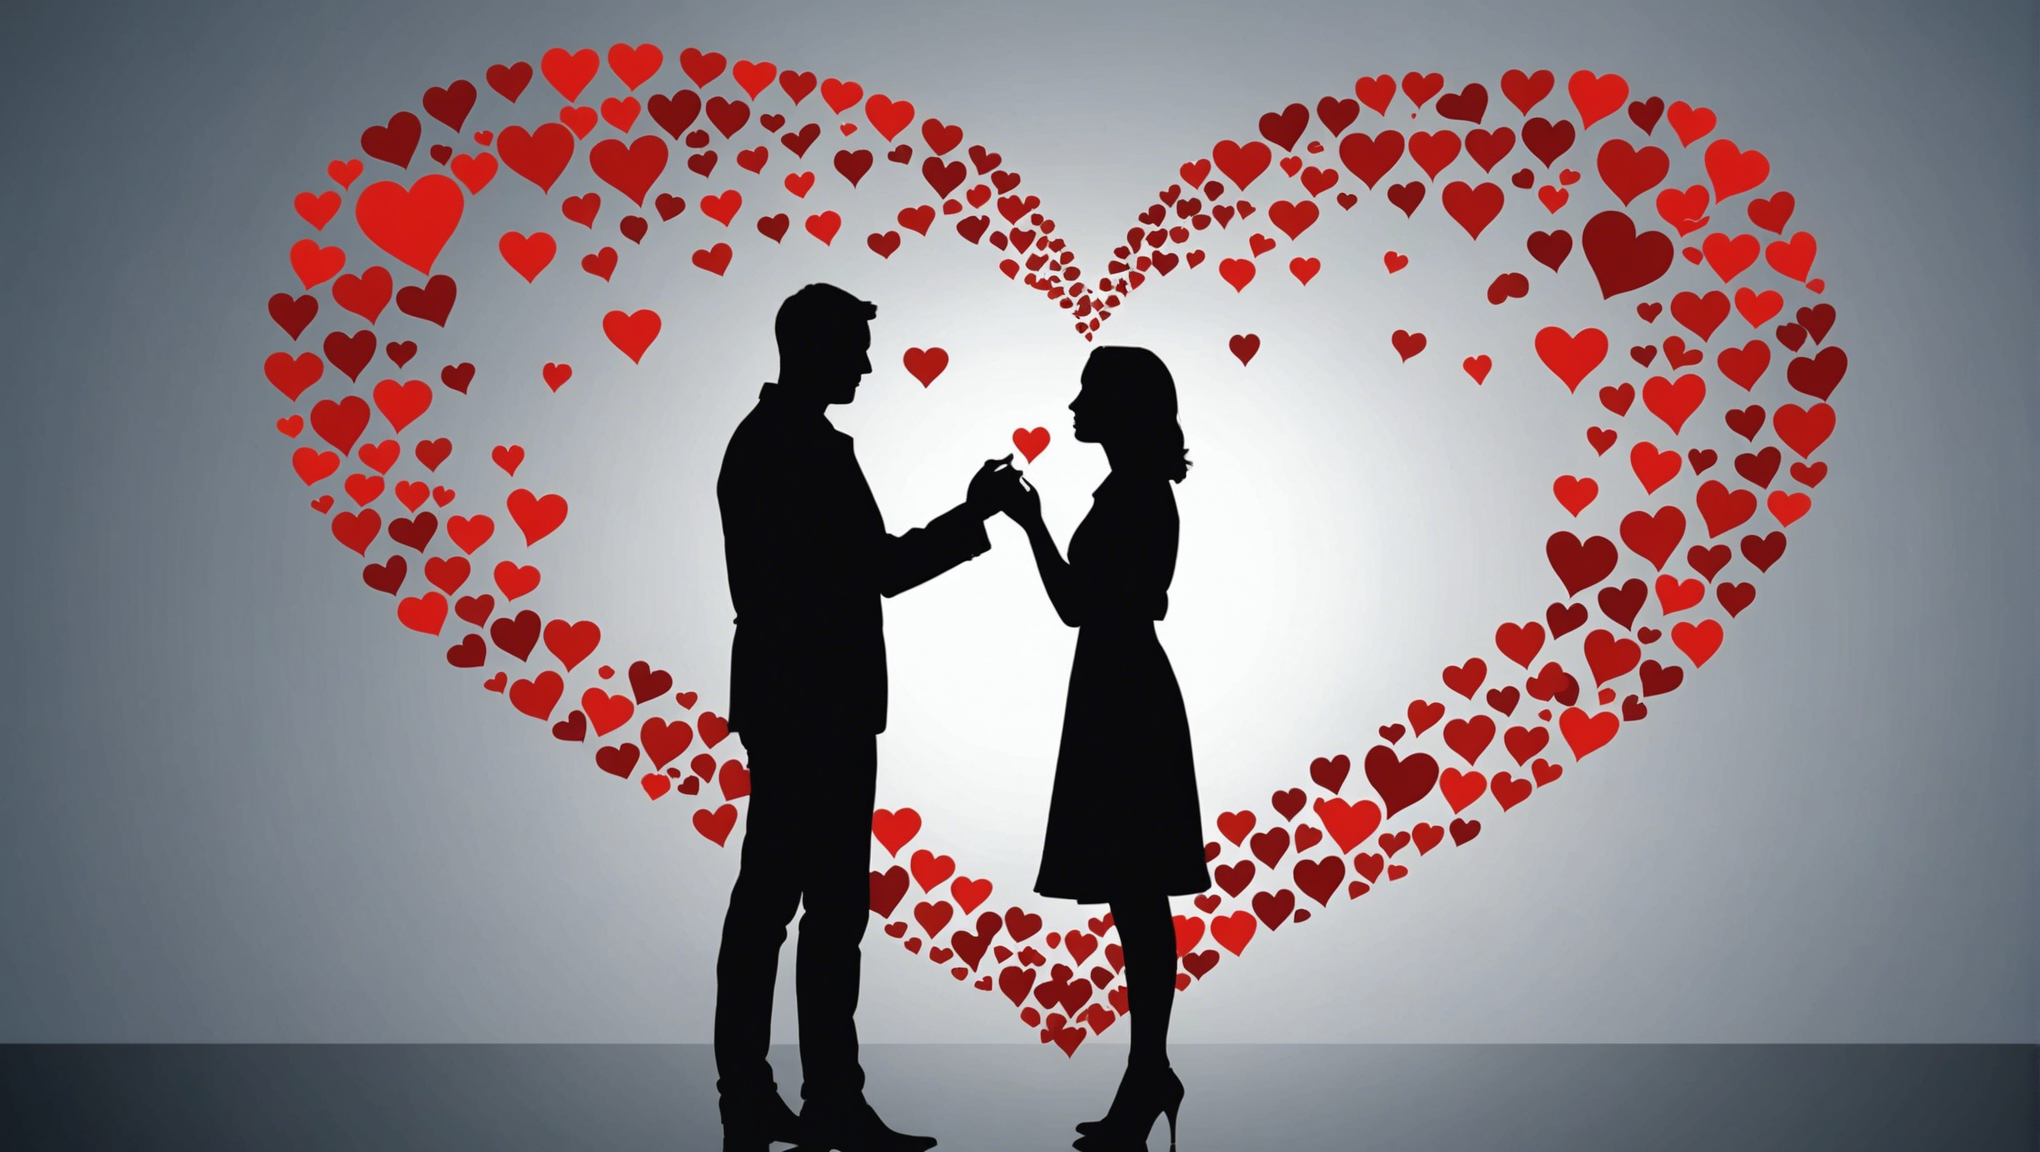 découvrez les réponses à vos questions fréquentes sur l'amour dans cet article qui explore les différents aspects de ce sentiment universel.